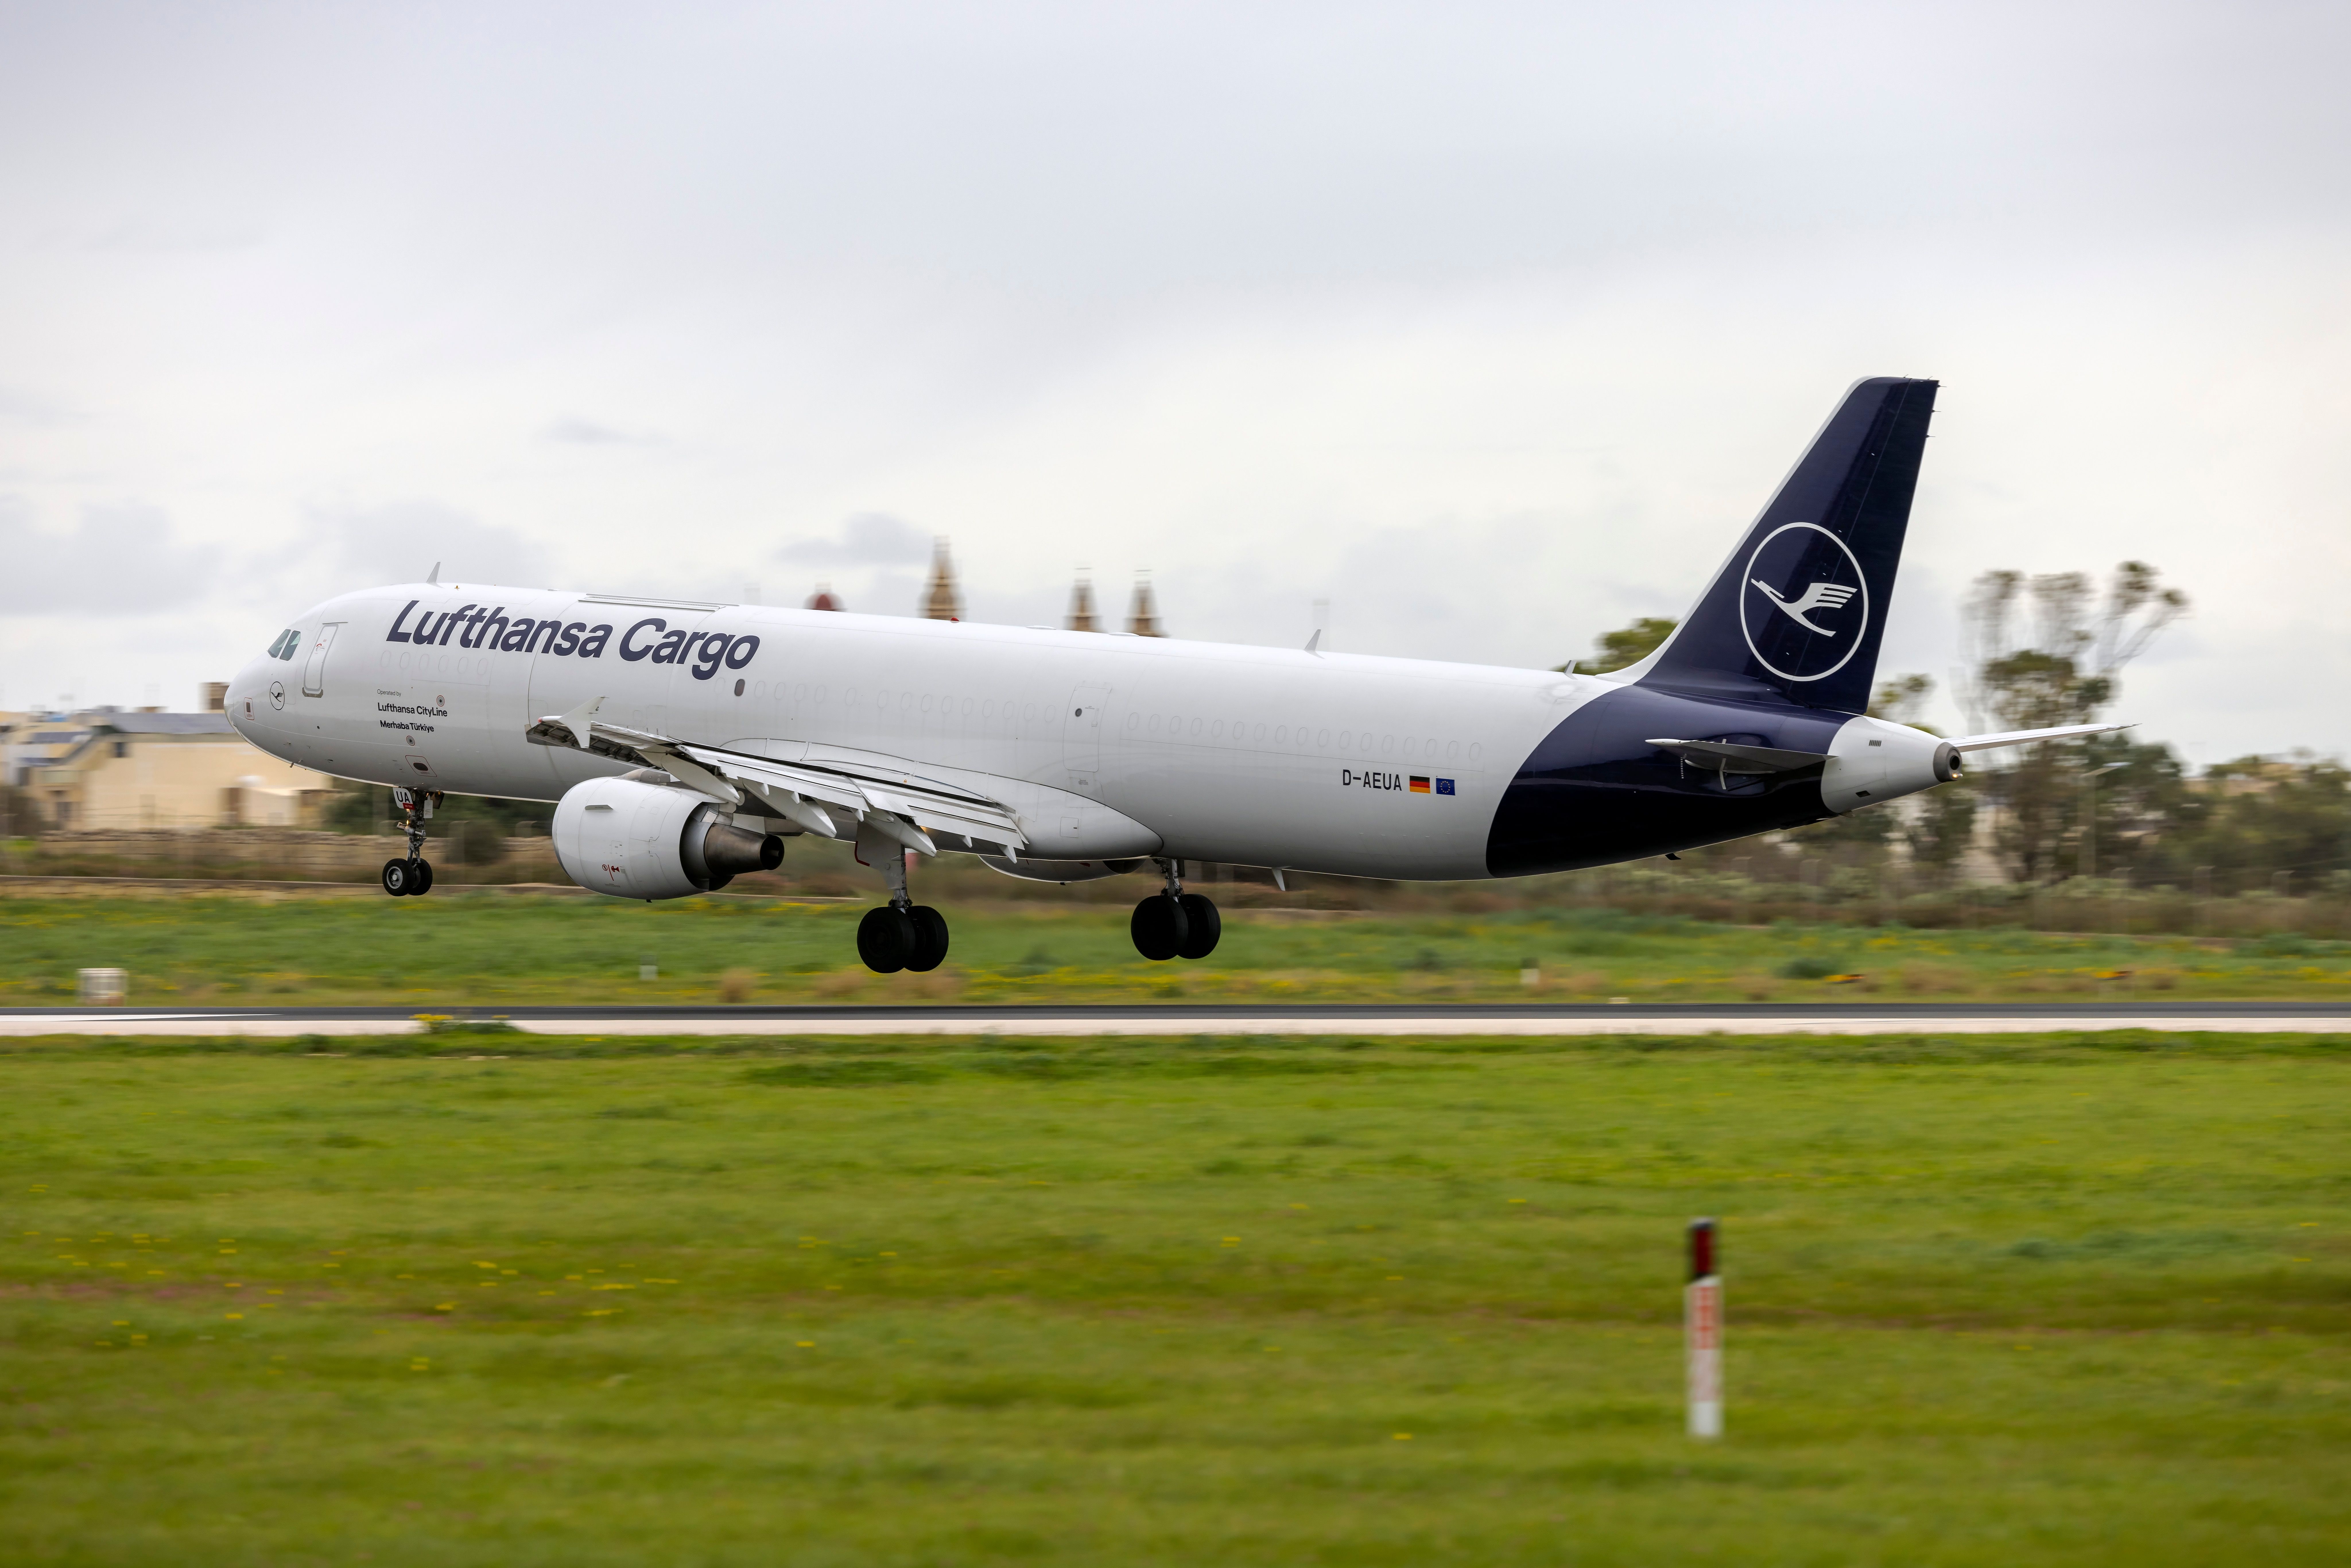 A Lufthansa Cargo aircraft 